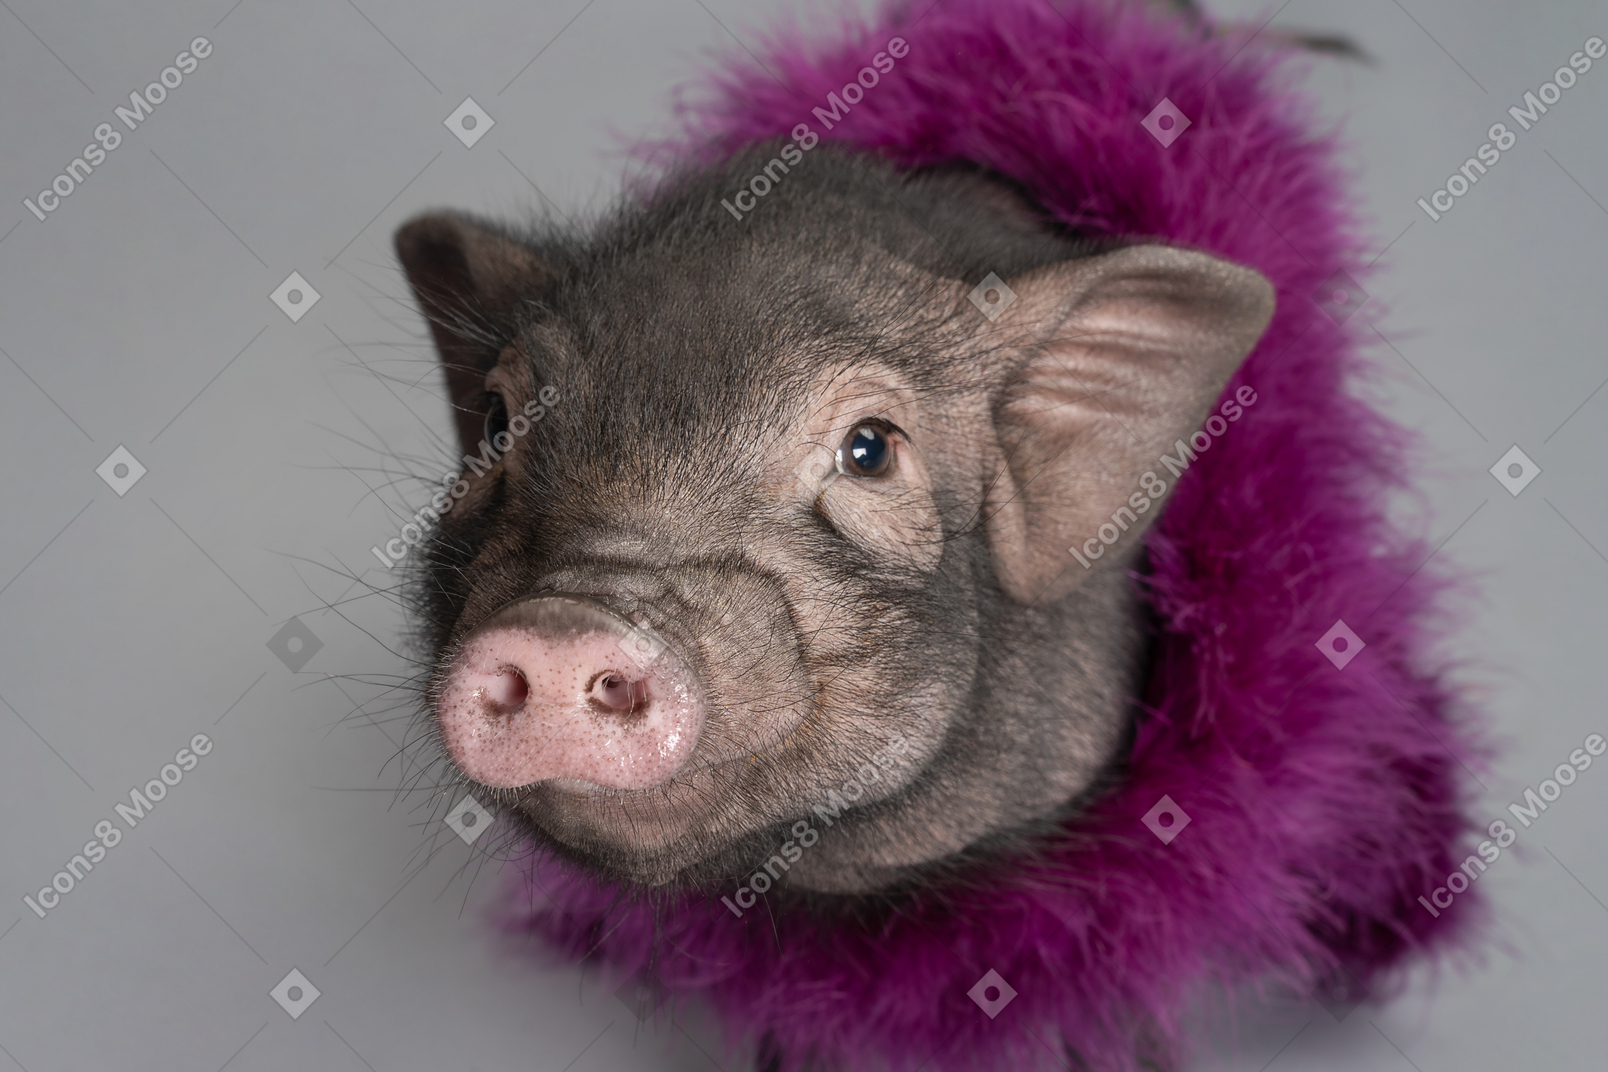 Süßes kleines schwein, das eine boa trägt, geht irgendwohin